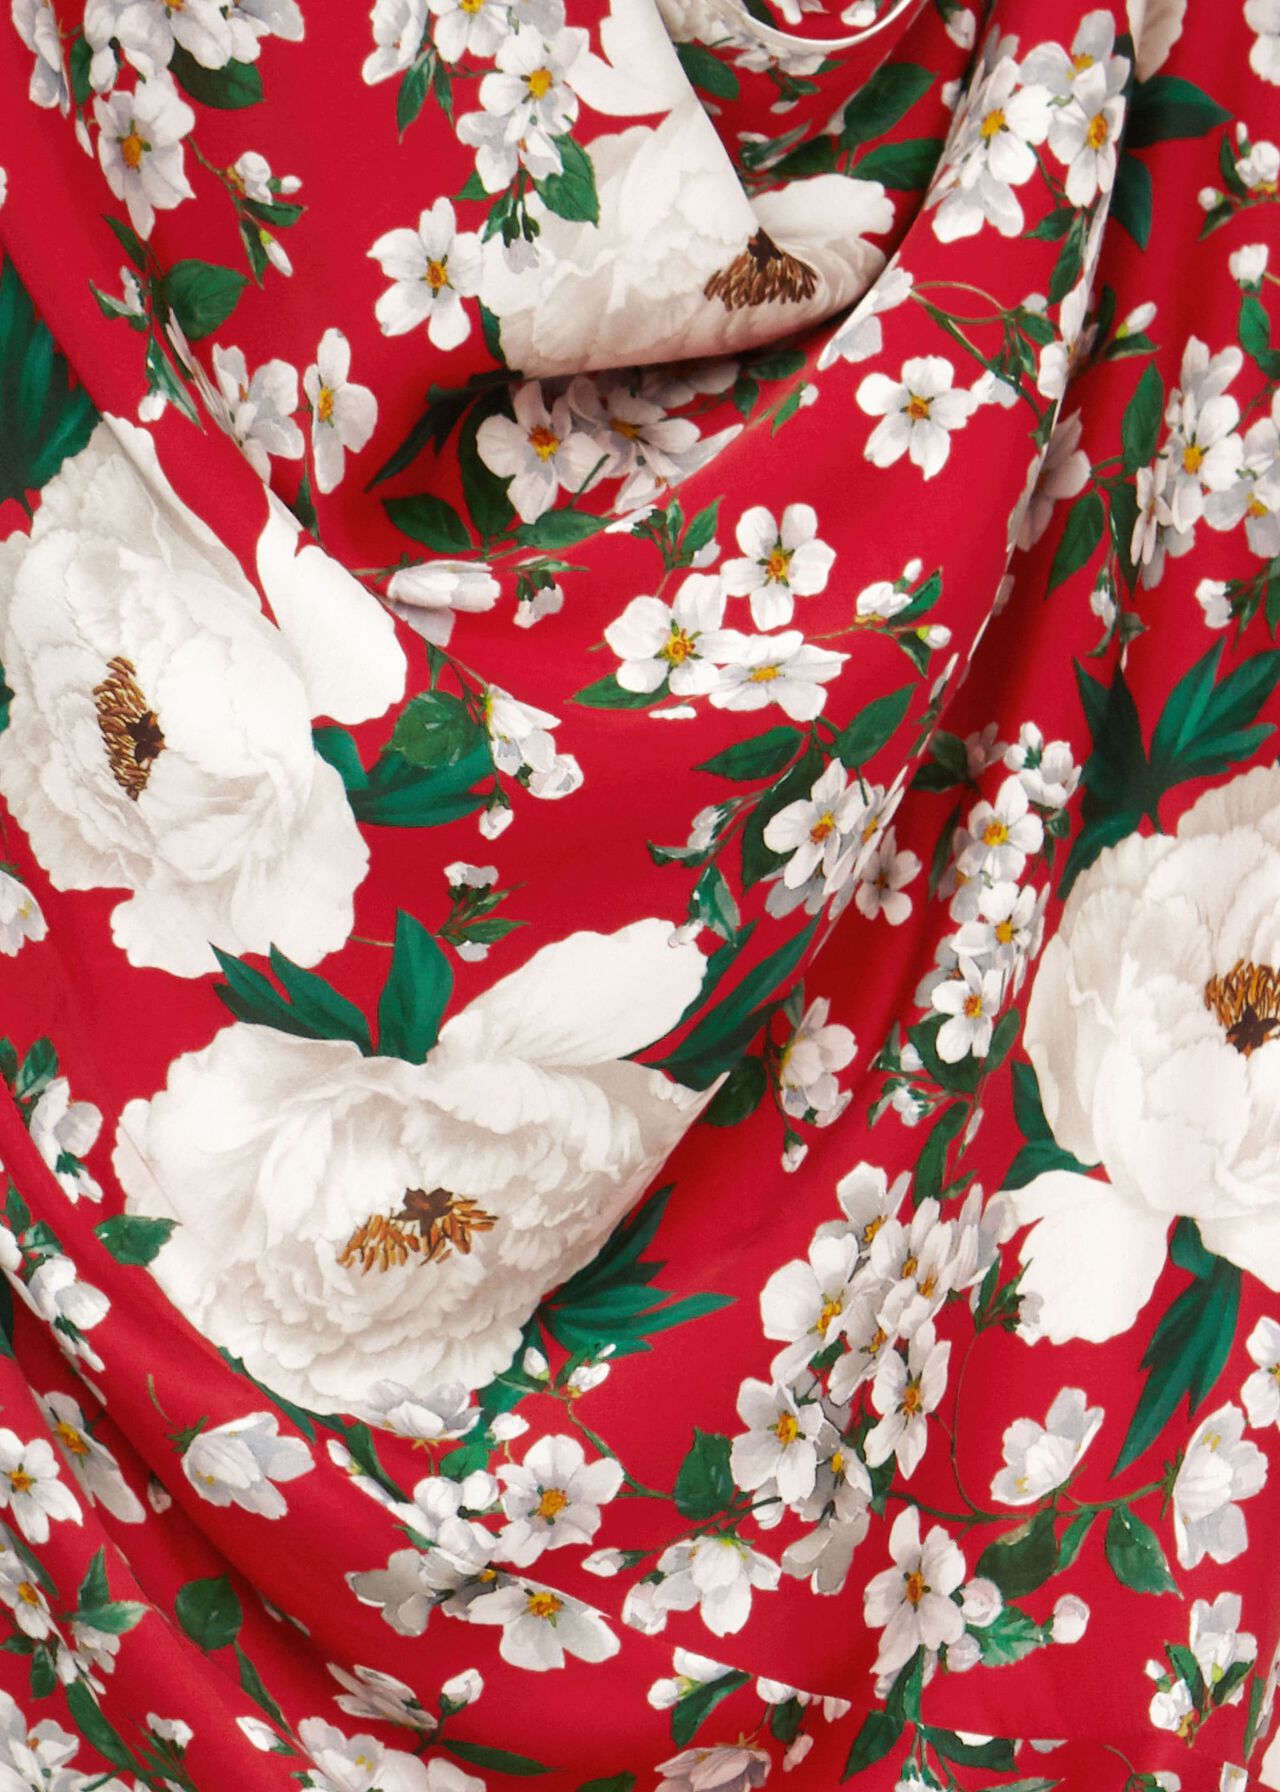 Bella Floral Print Satin Dress, Red Multi, hi-res